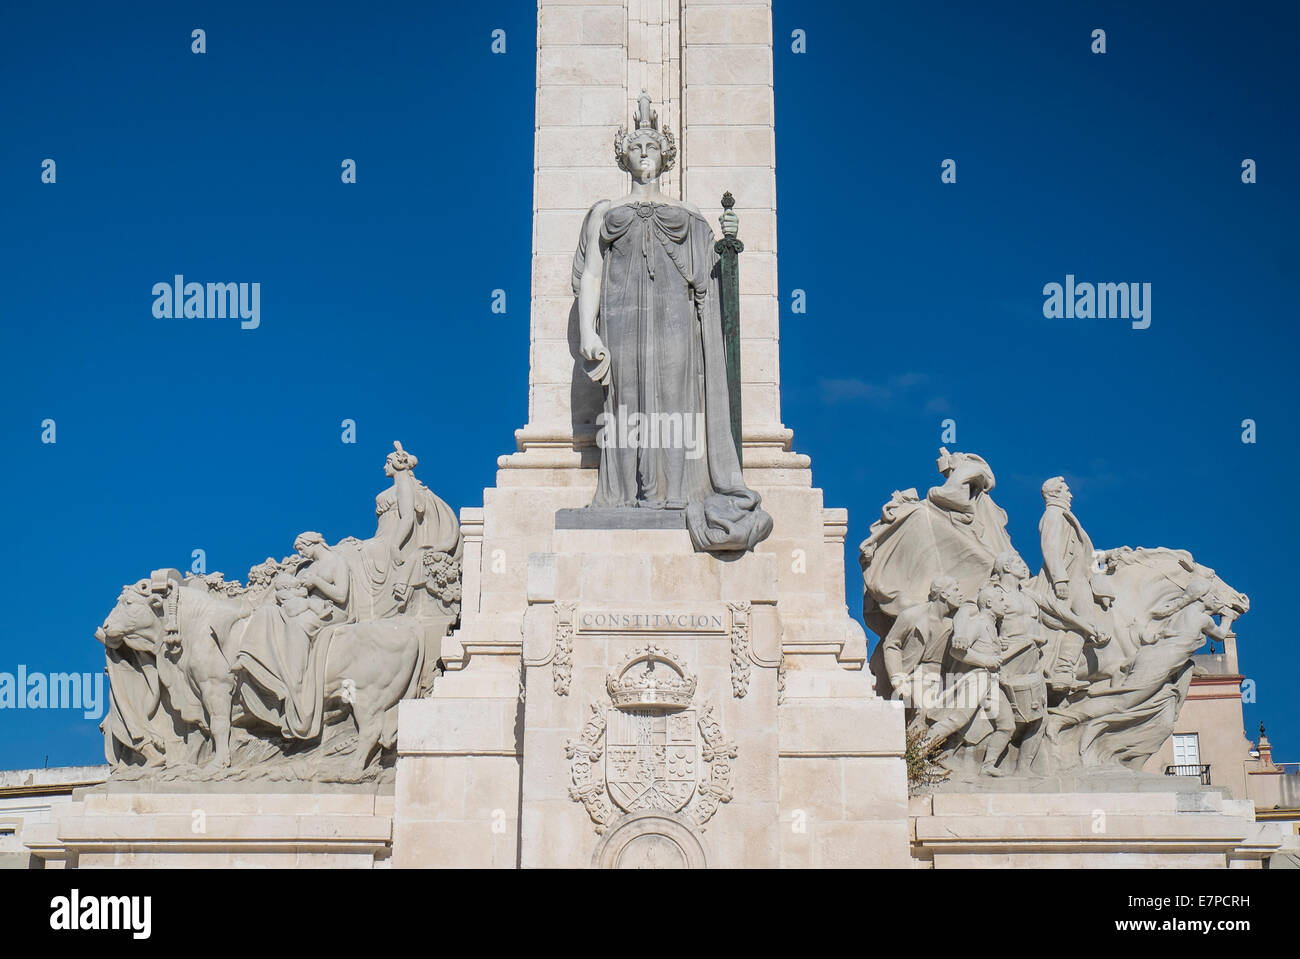 Spagna, Cadiz, Monumento alla Costituzione del 1813 Foto Stock